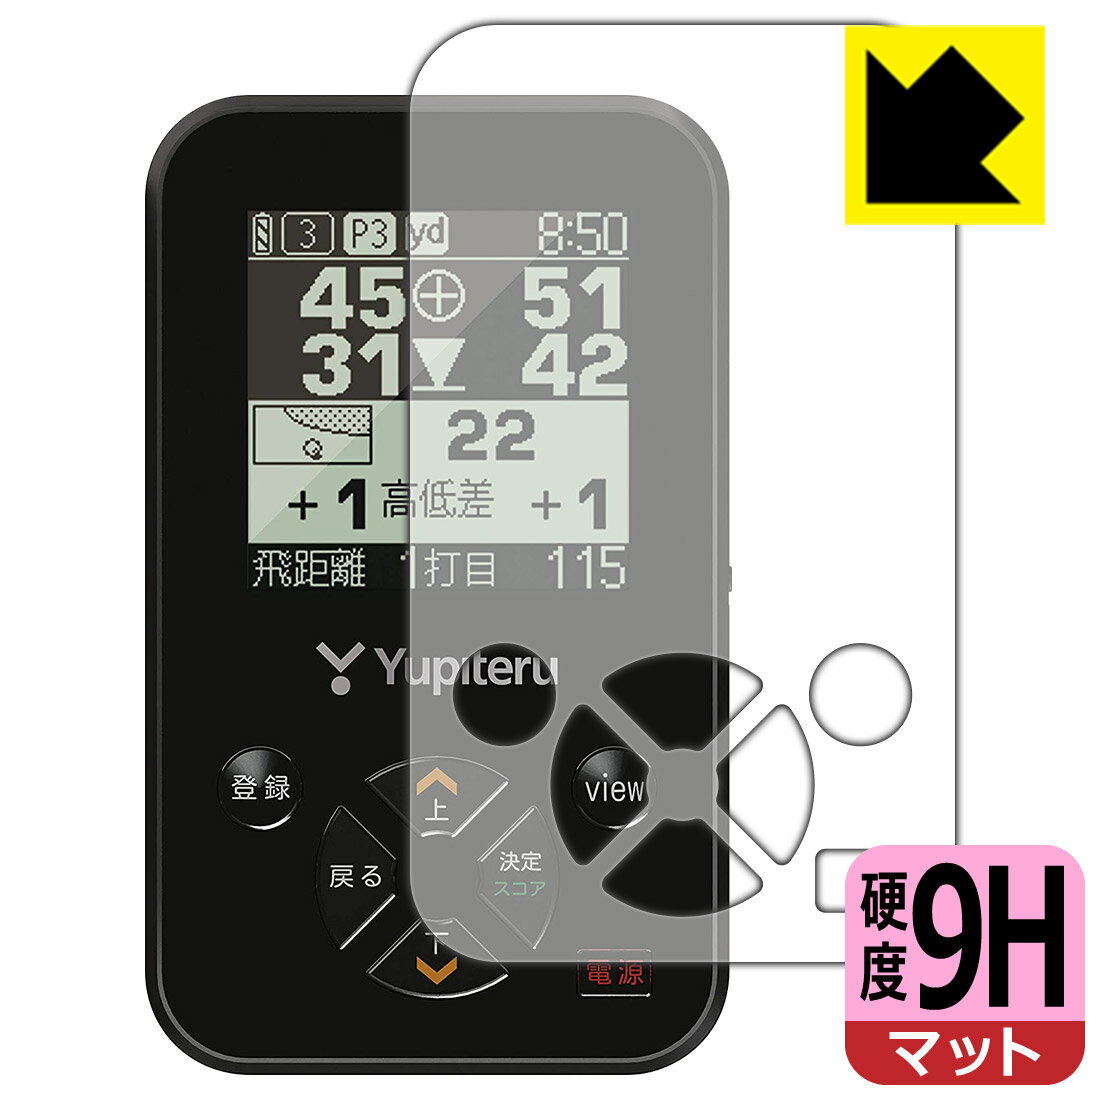 9H高硬度【反射低減】保護フィルム ゴルフナビ YGN4200 日本製 自社製造直販